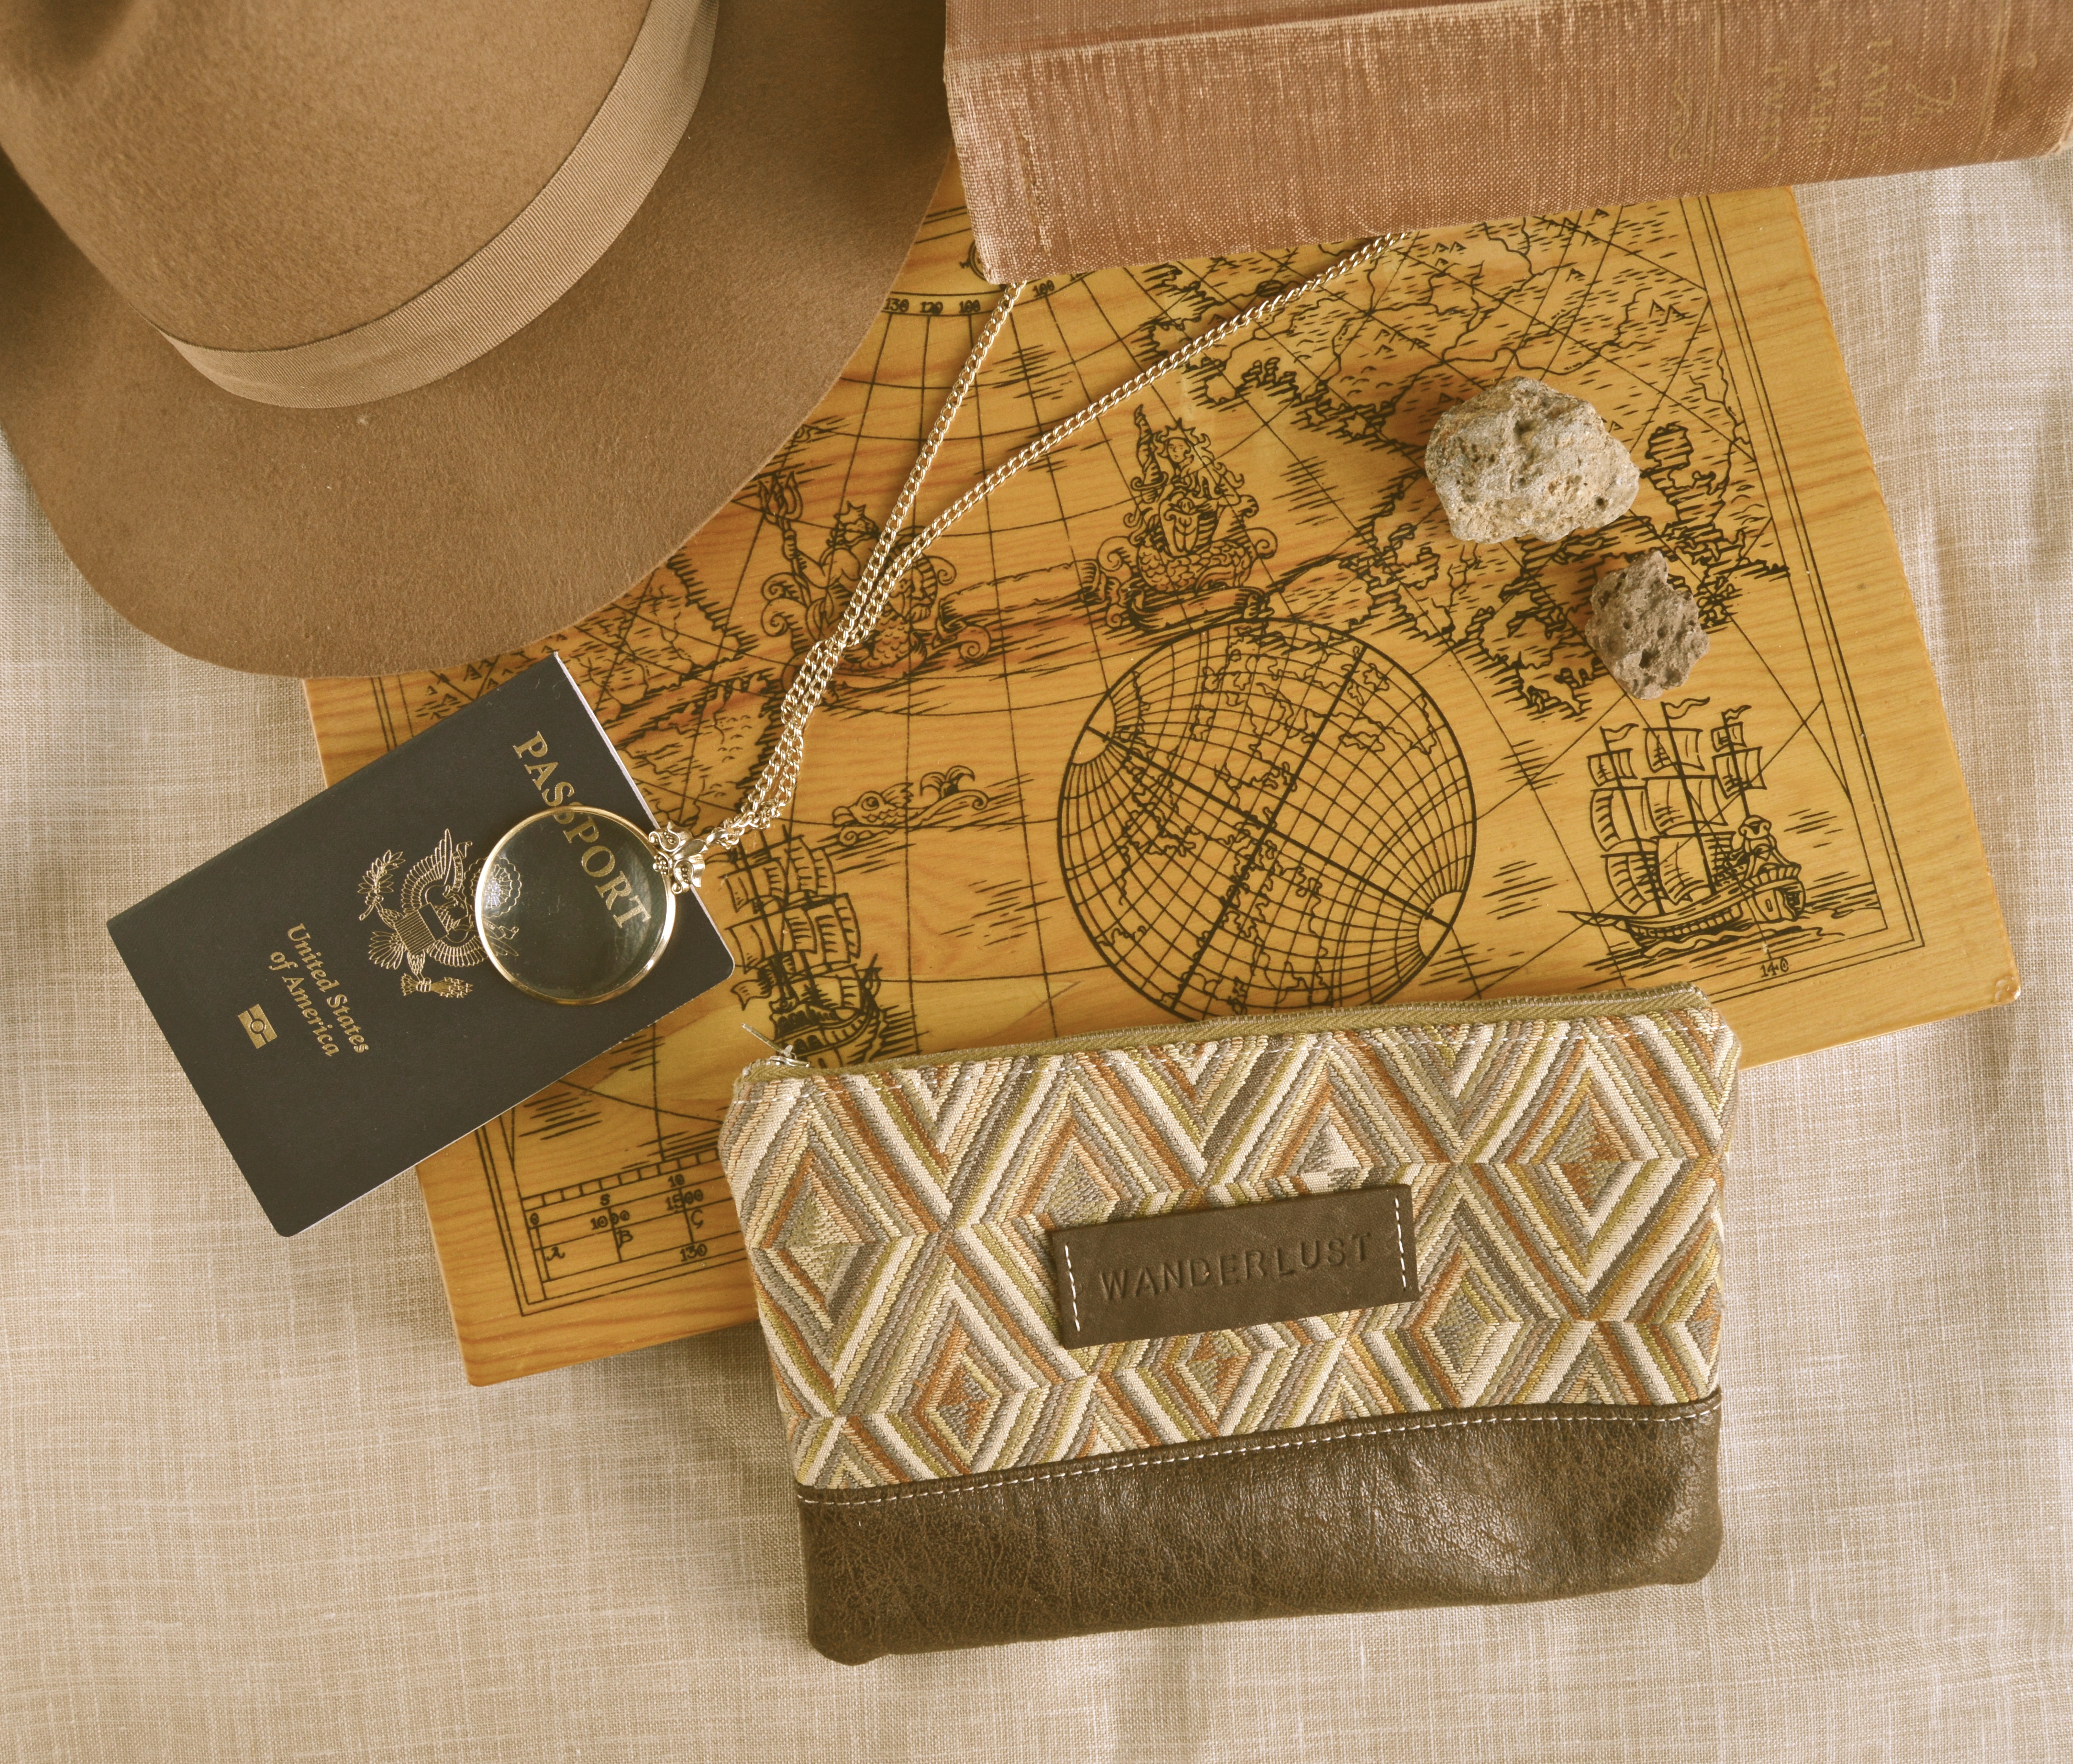 adventurer travel bag gift